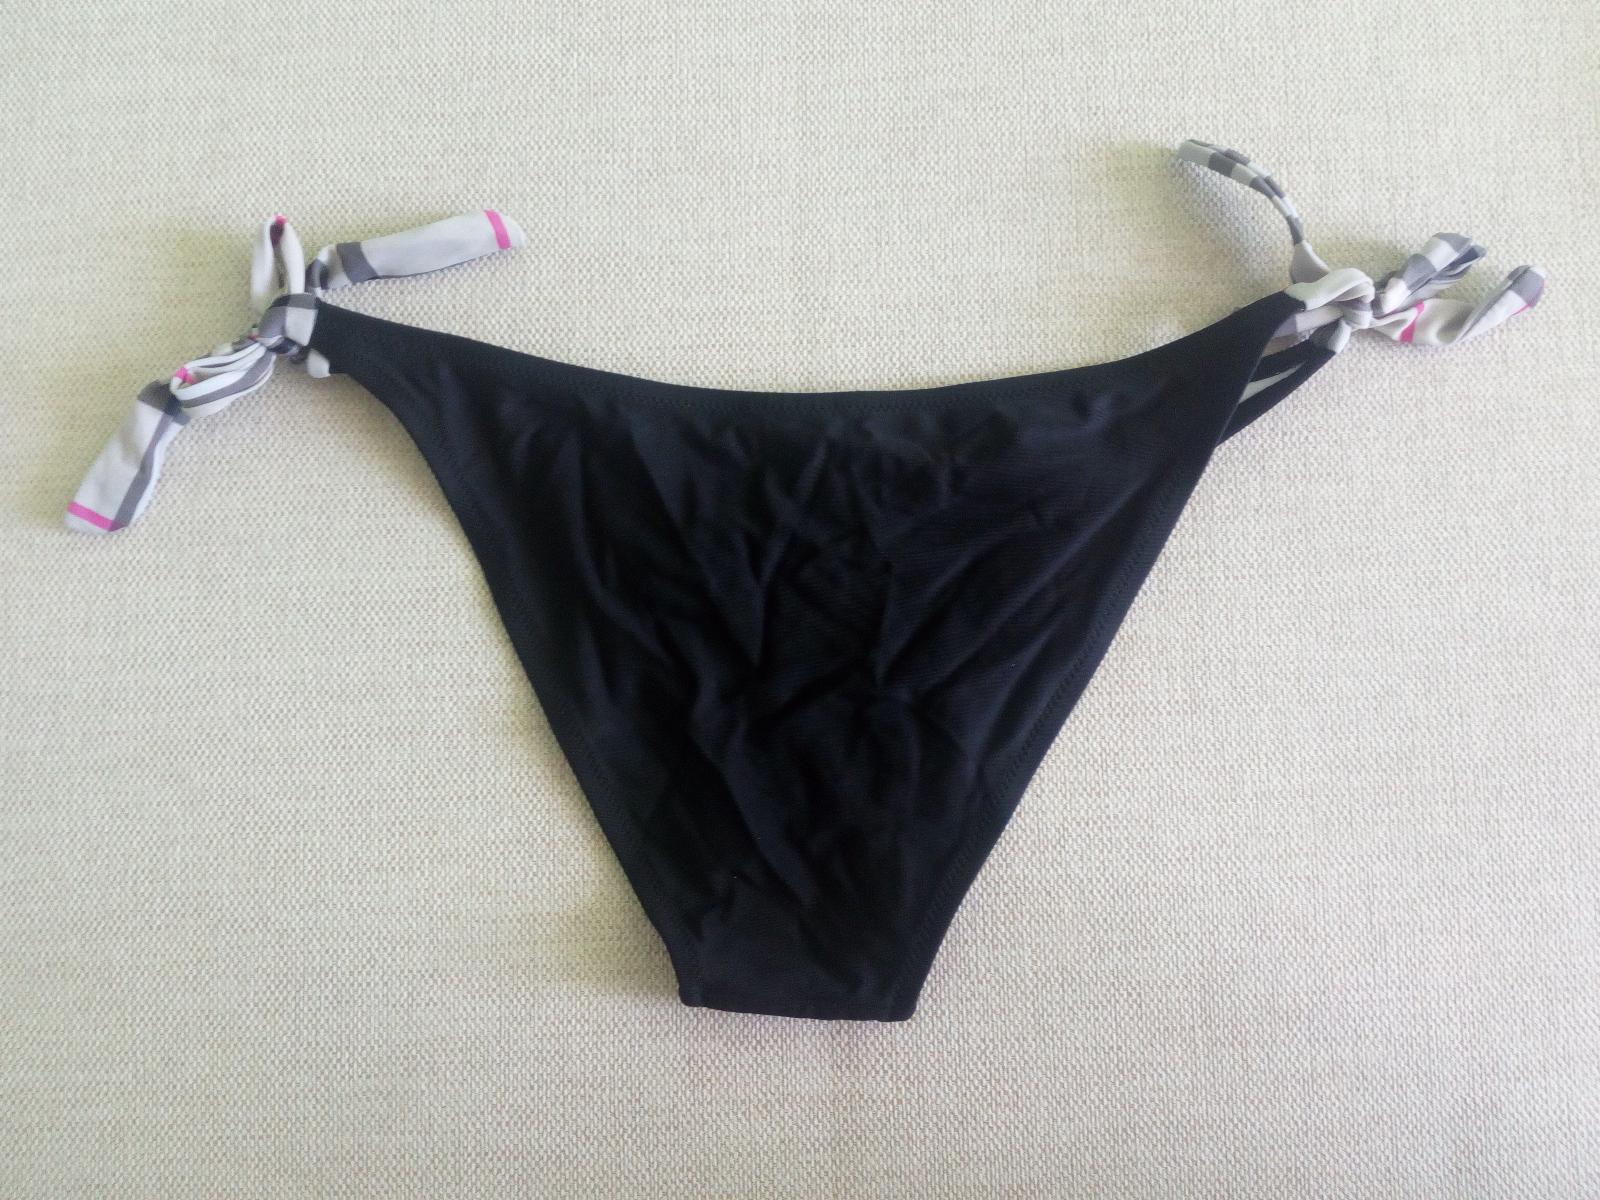 Spodní díl módních bikin plavek (kalhotky) vel.44 (Nošené) Černé - Dámské oblečení